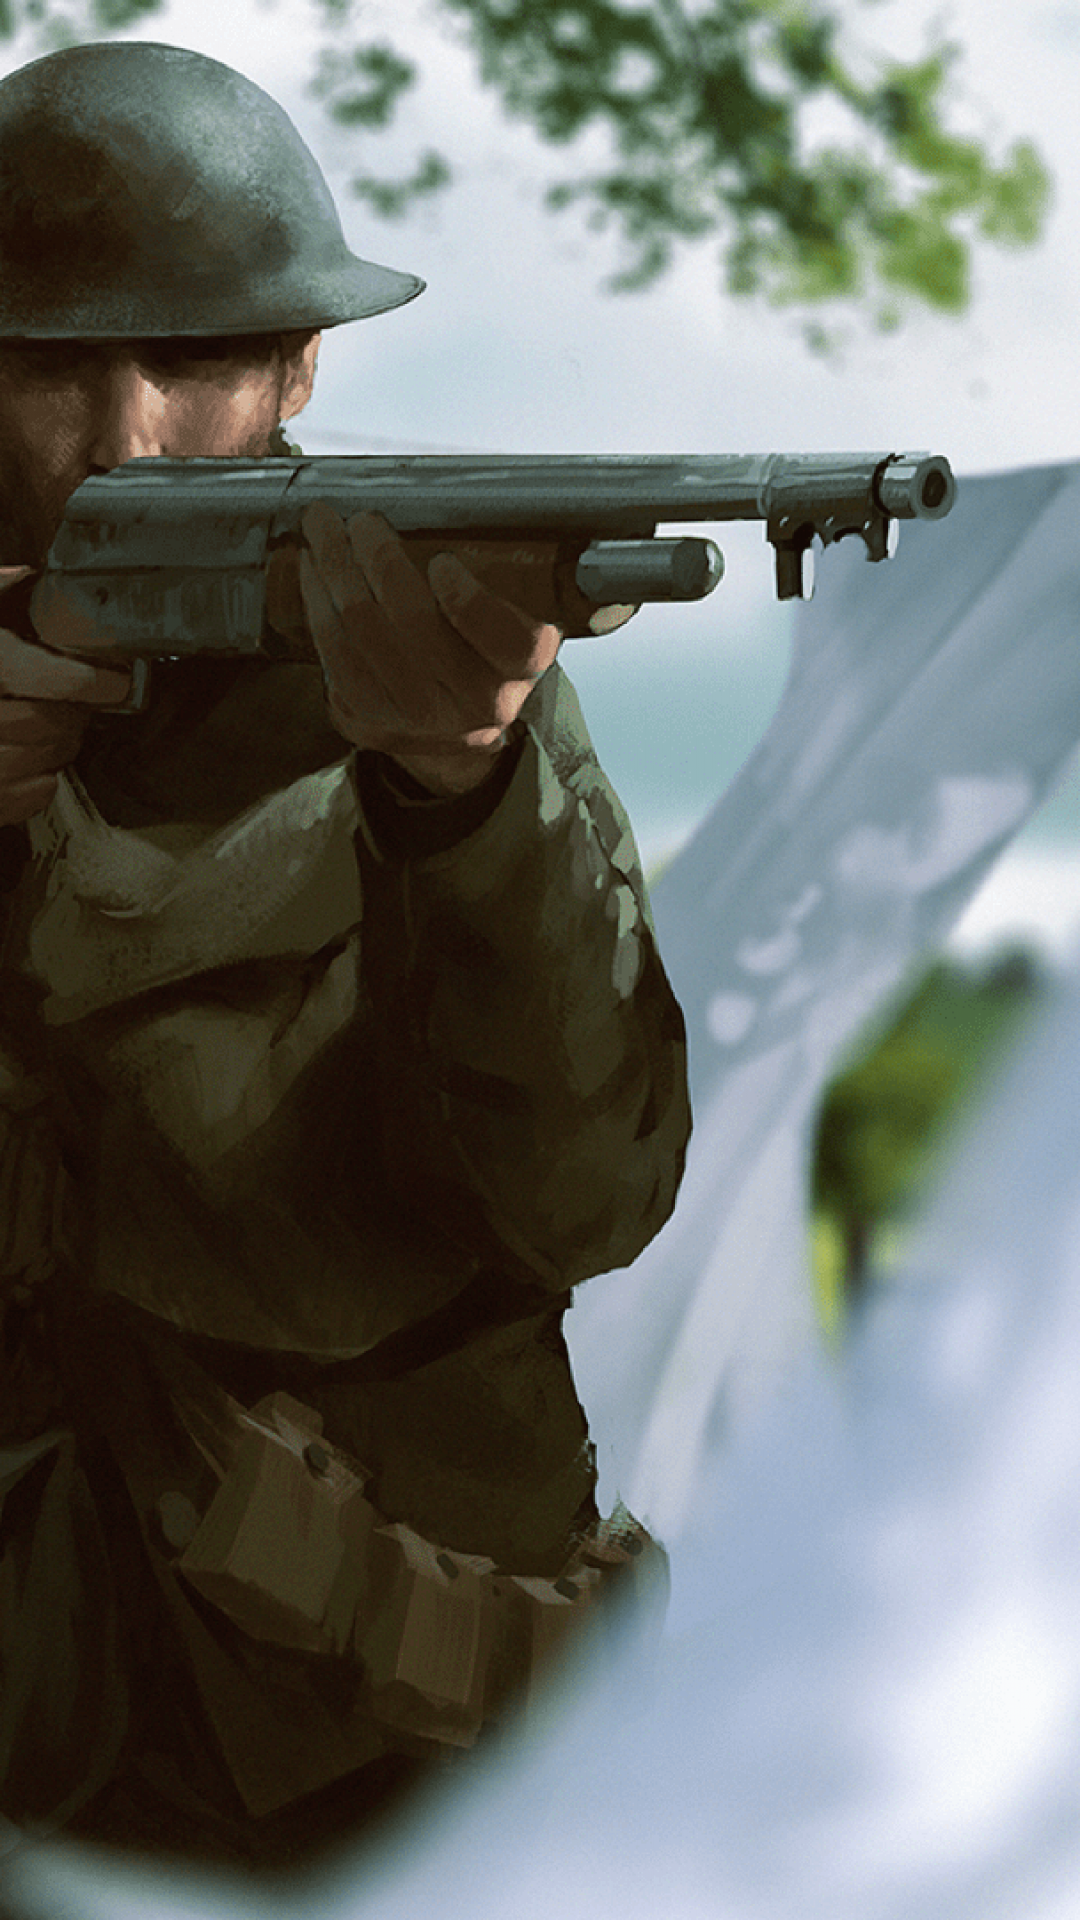 Battlefield 1, Soldier - Hd Battlefield 1 Wallpaper For Ipod - HD Wallpaper 